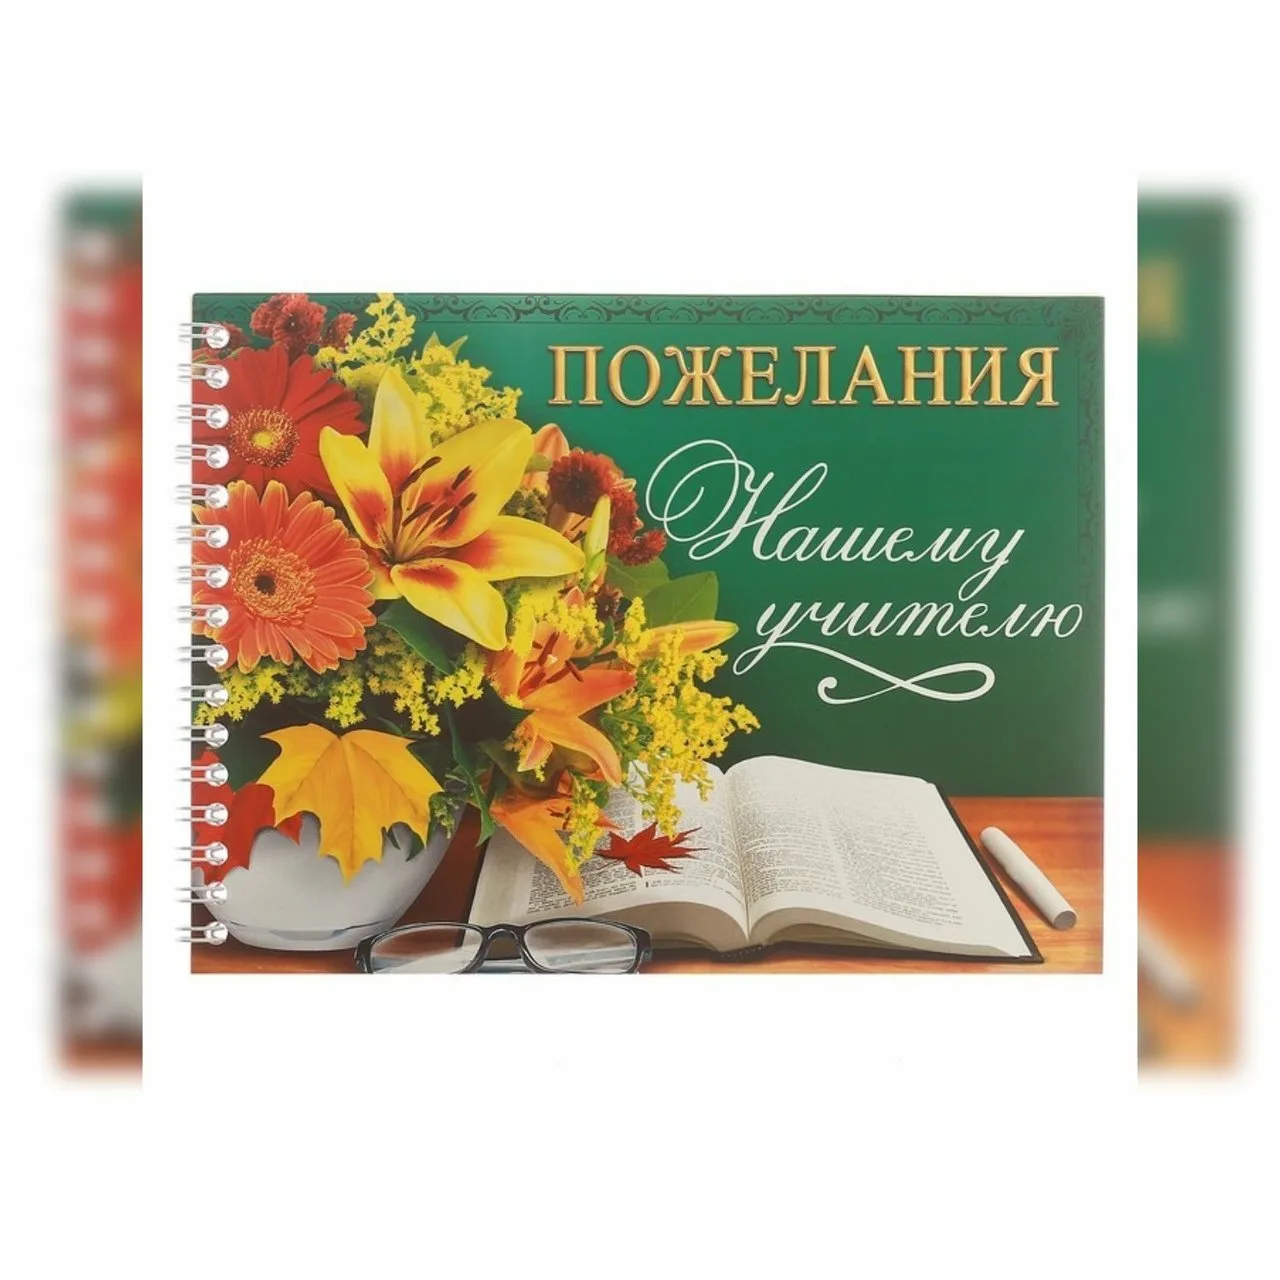 Фото Поздравления с днем рождения учителю русского языка #93